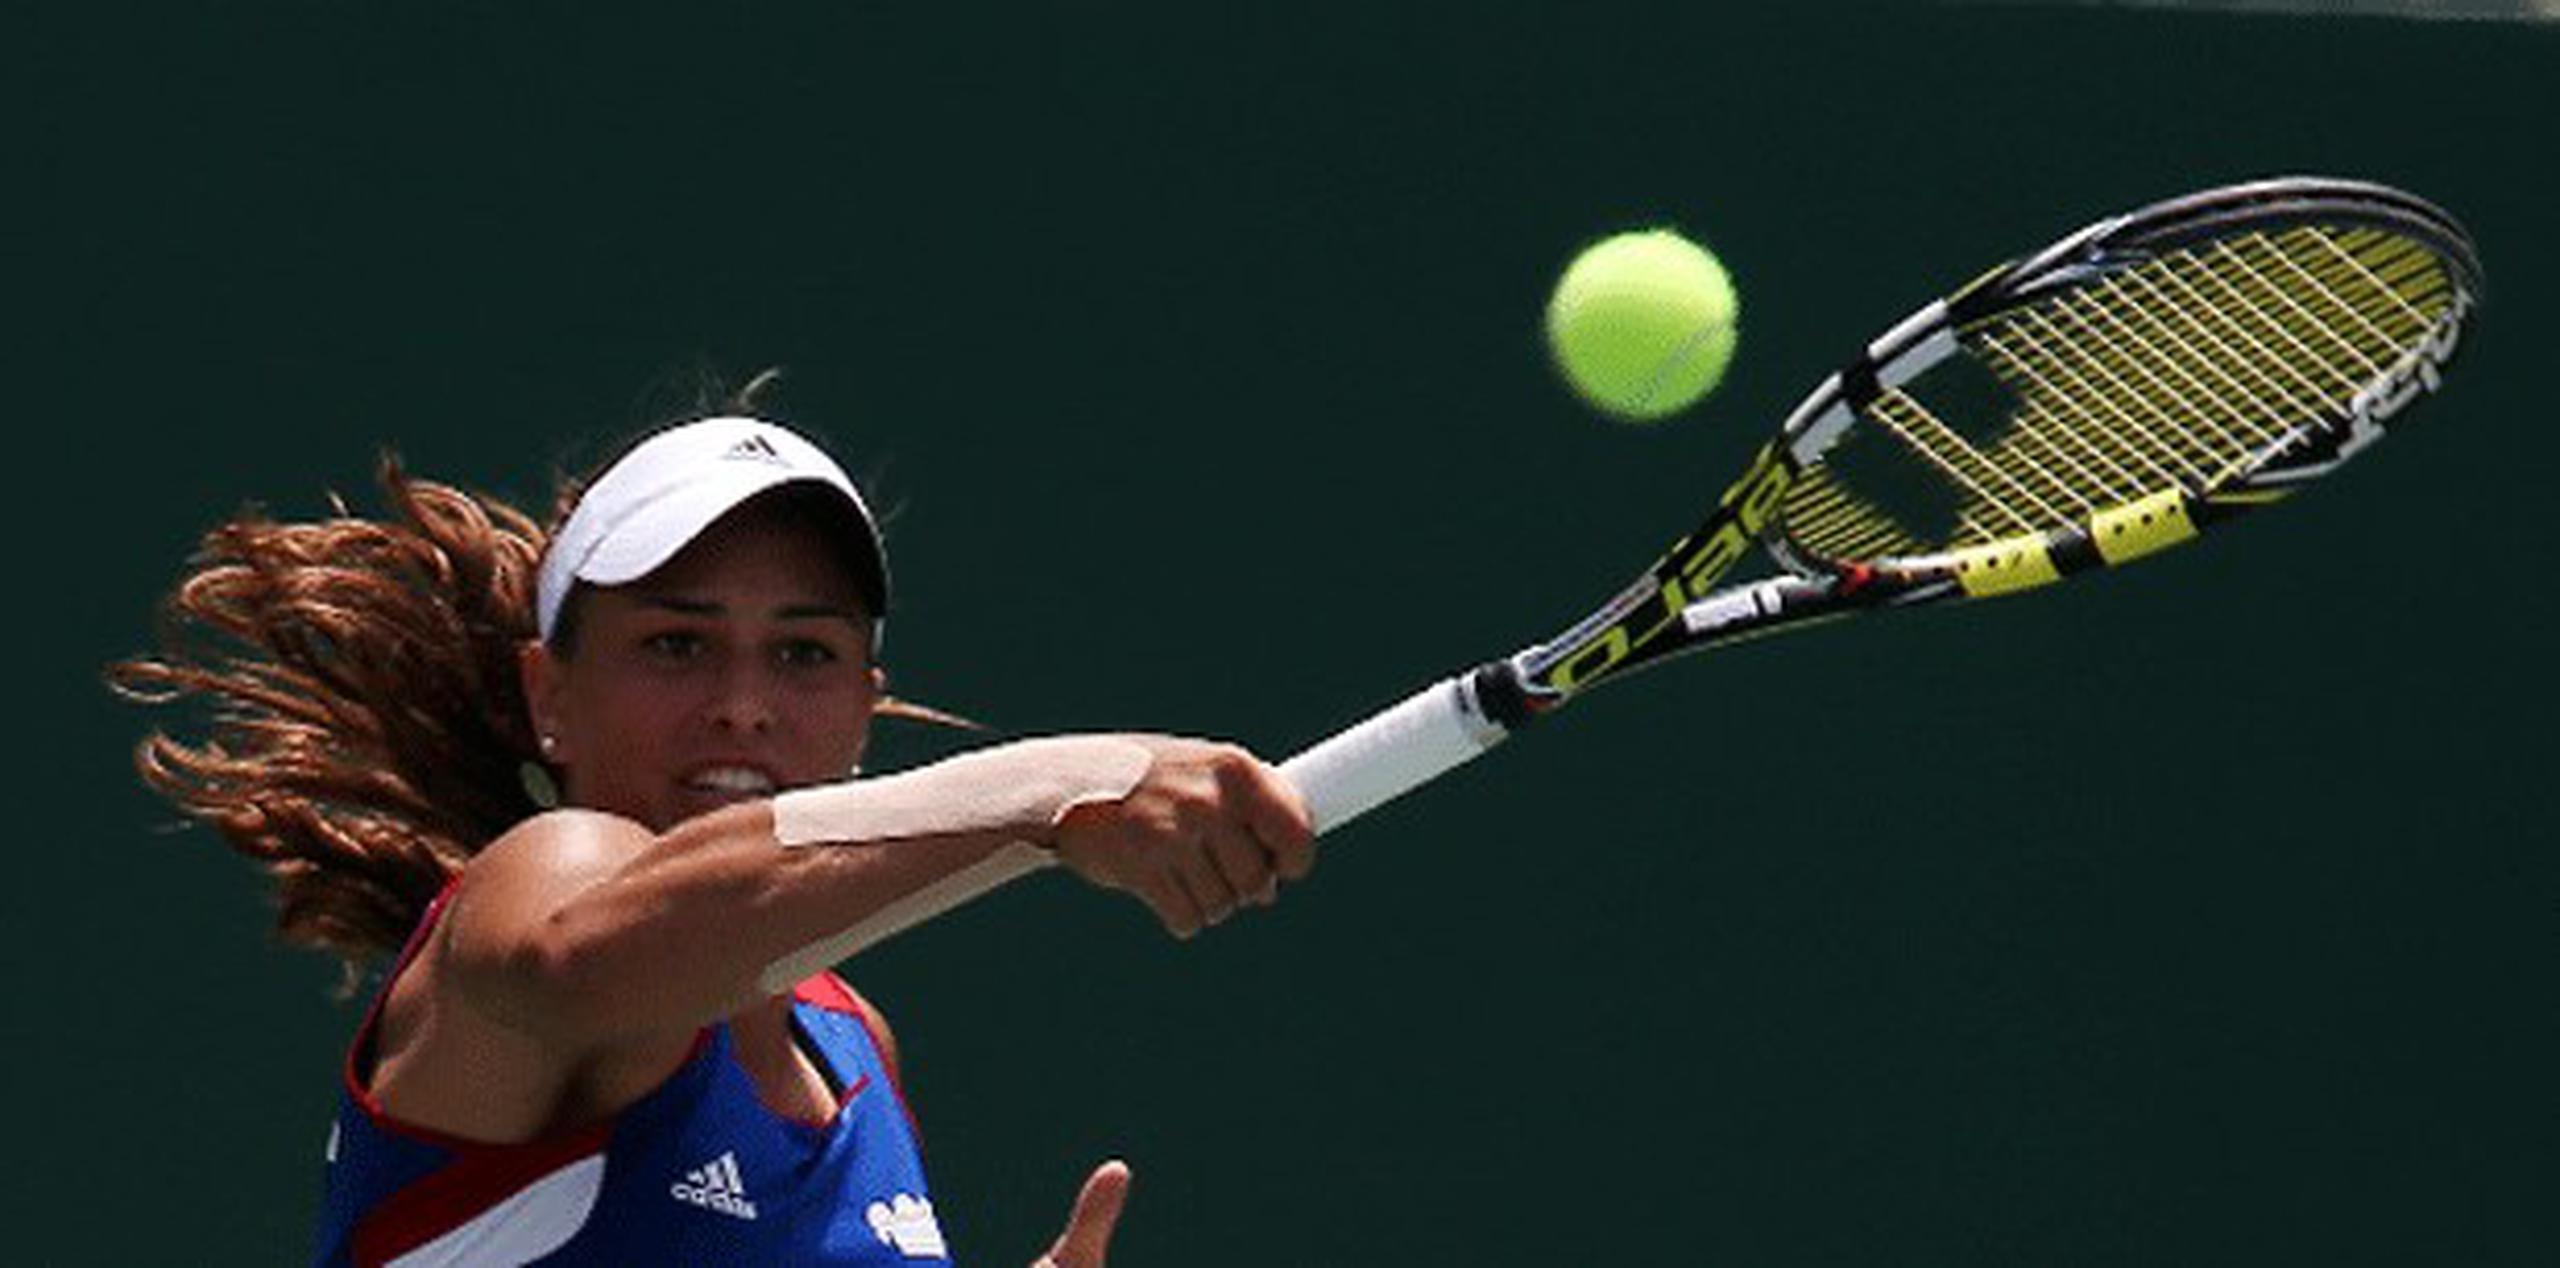 La boricua está clasificada número 55 en el ranking mundial de la Asociación de Tenis de Mujeres. (Archivo)